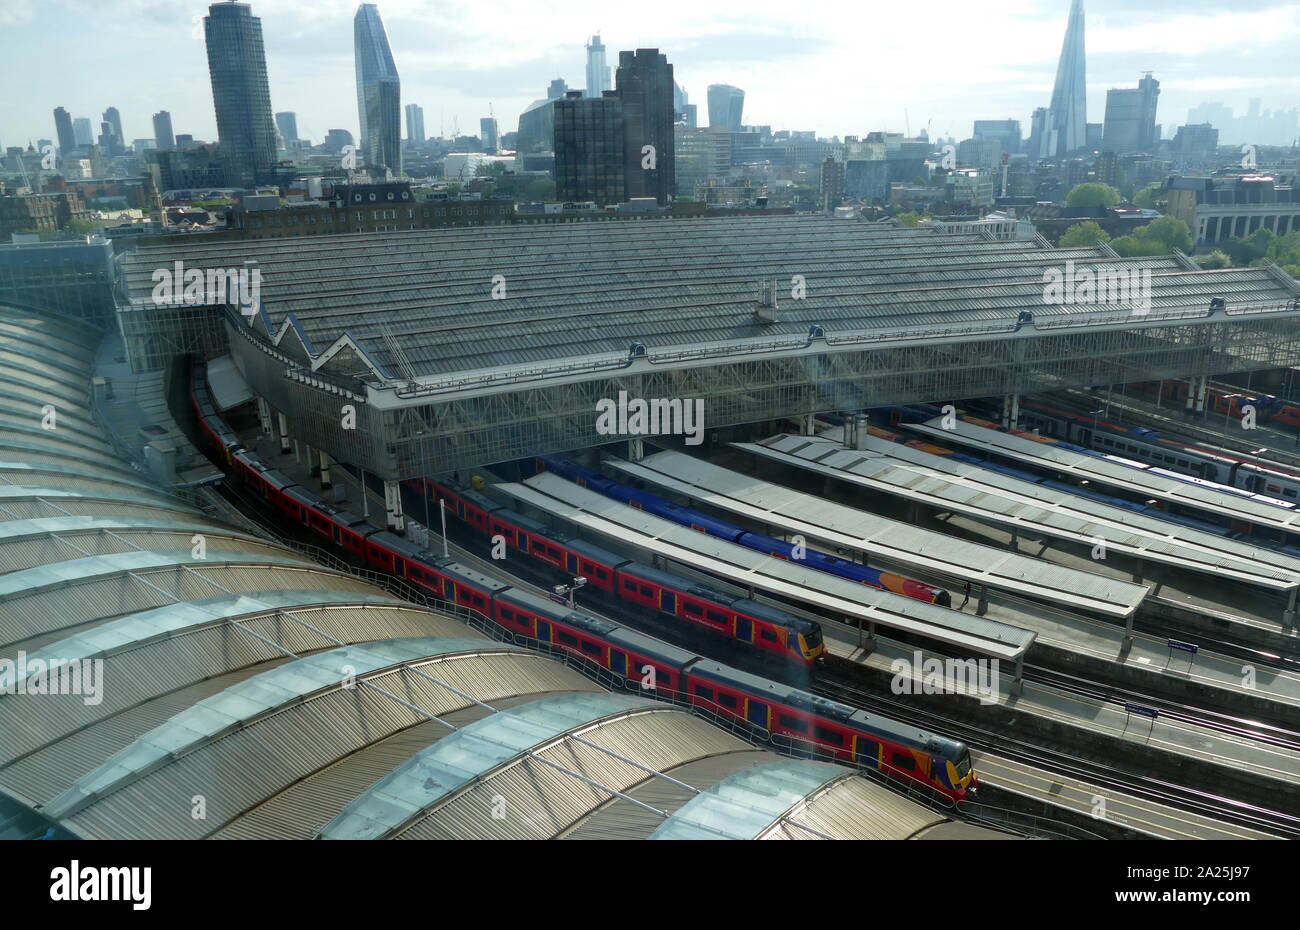 La gare de Waterloo dans le centre de Londres est une gare terminus sur le réseau ferroviaire national, au Royaume-Uni. Waterloo est la gare la plus achalandée au Royaume-Uni, avec près d'une centaine de millions d'entrées et sorties de la station chaque année. C'est aussi la station la plus importante du pays en termes de surface au sol et a le plus grand nombre de plates-formes. Banque D'Images